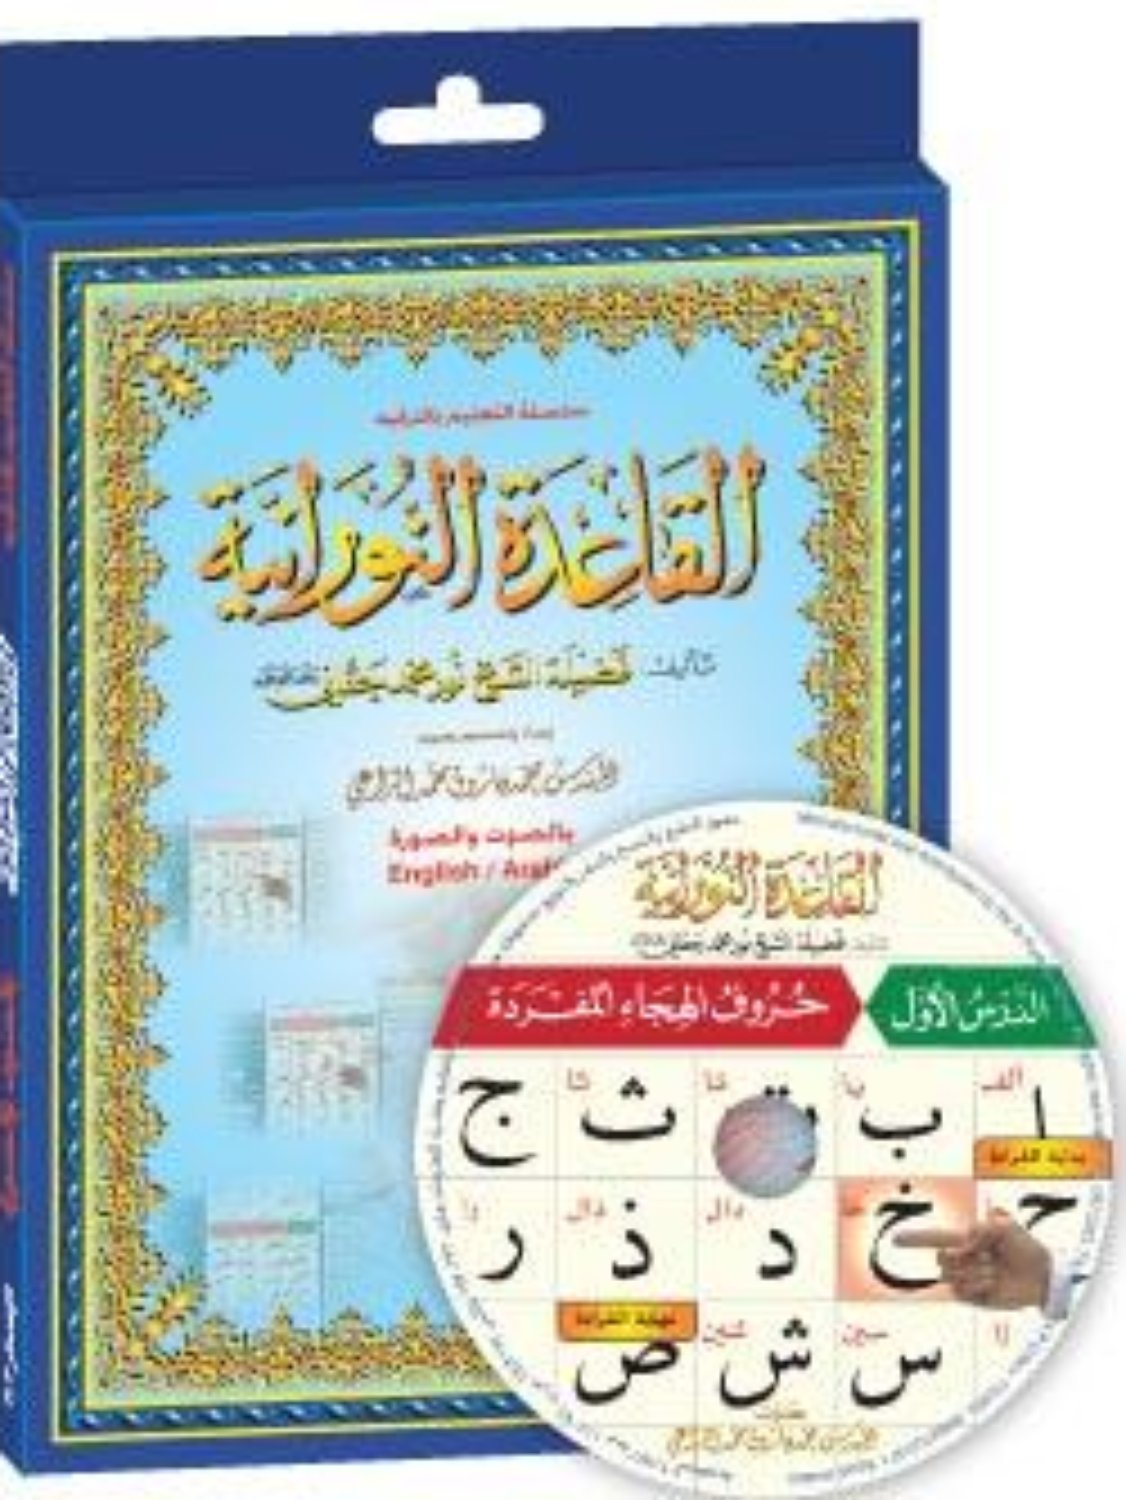 Al-Qaidah An-Noraniah Interactive Software PC CD-ROM